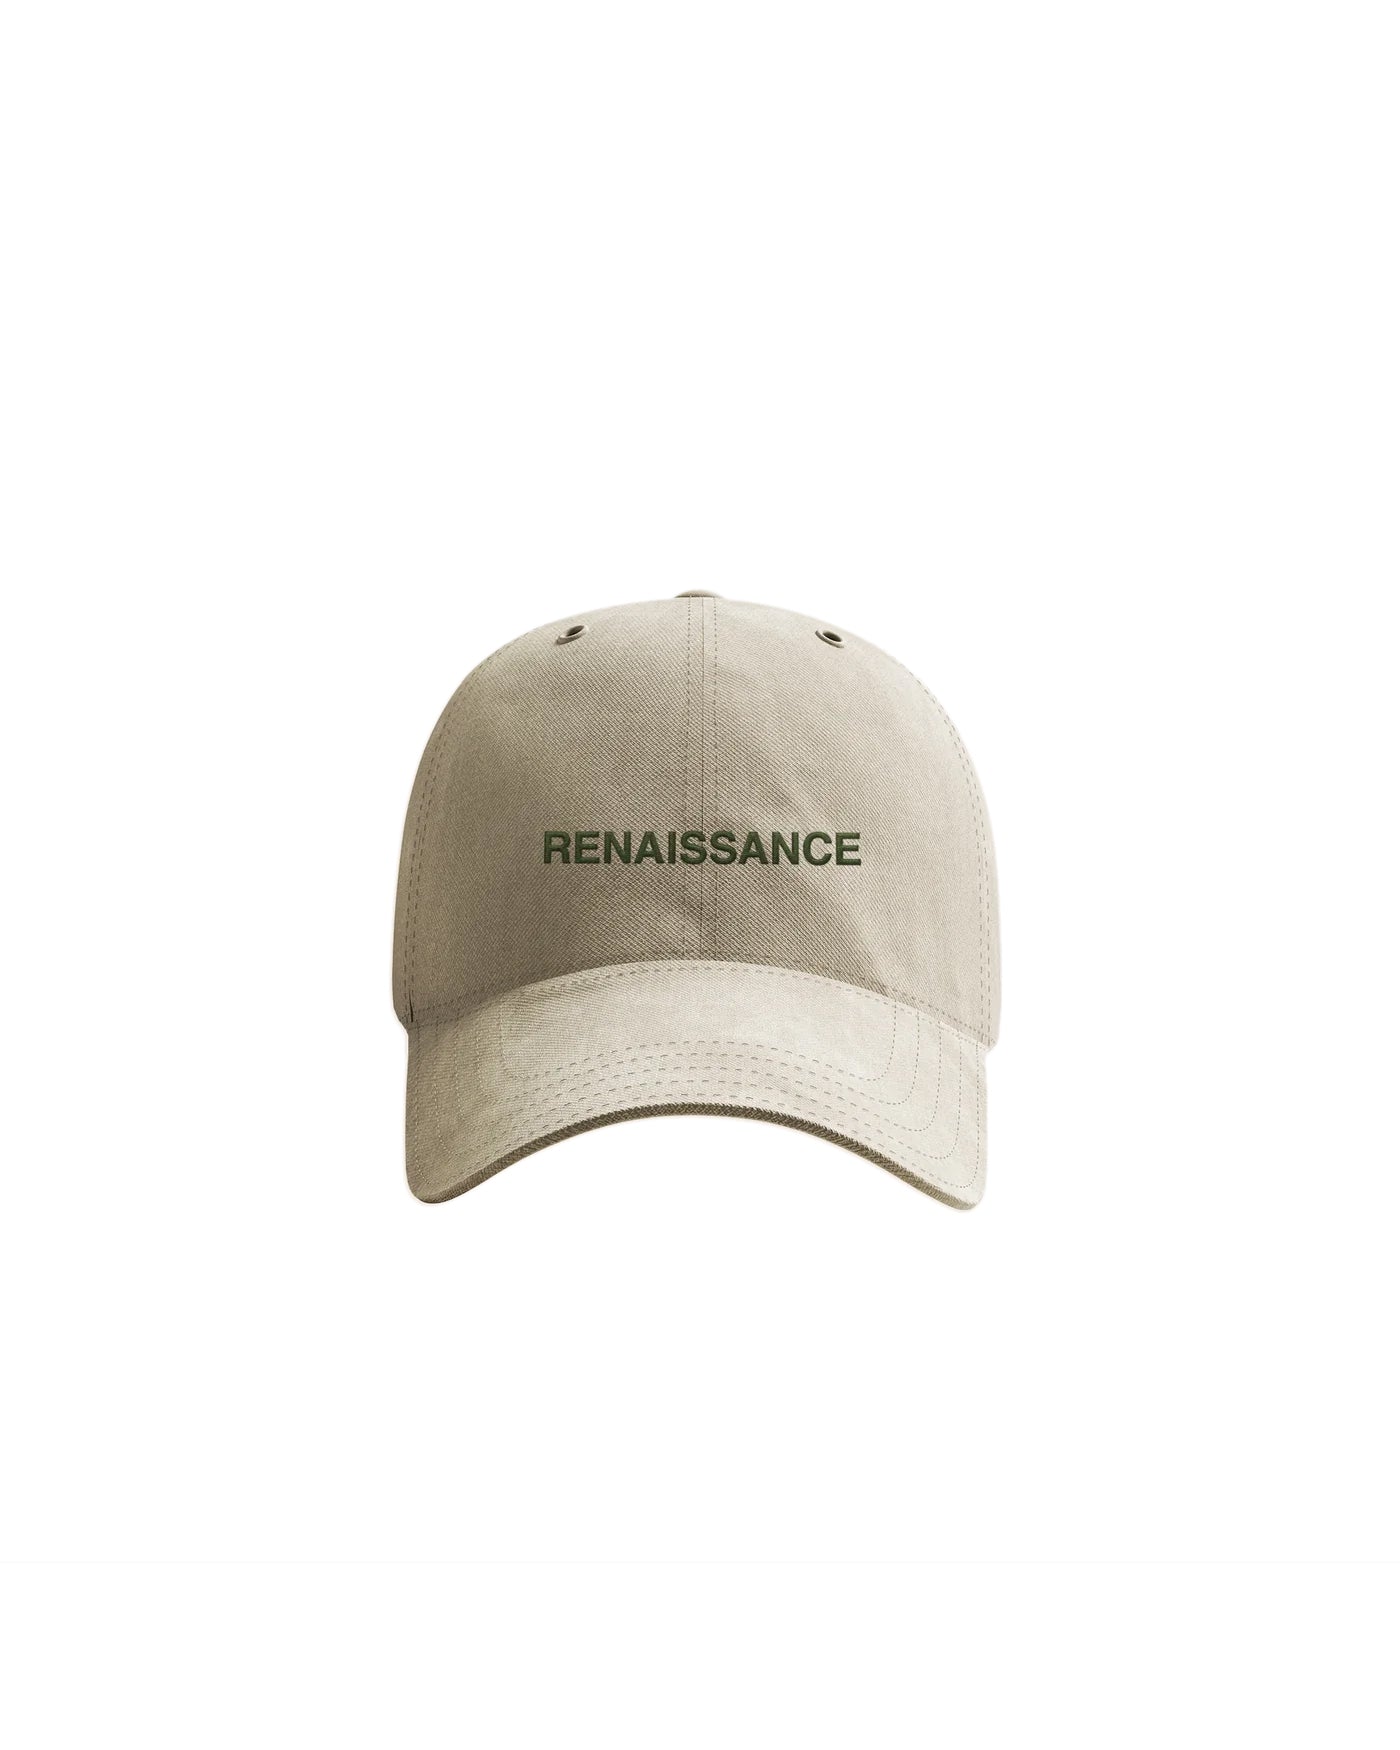 Renaissance Dad Hat